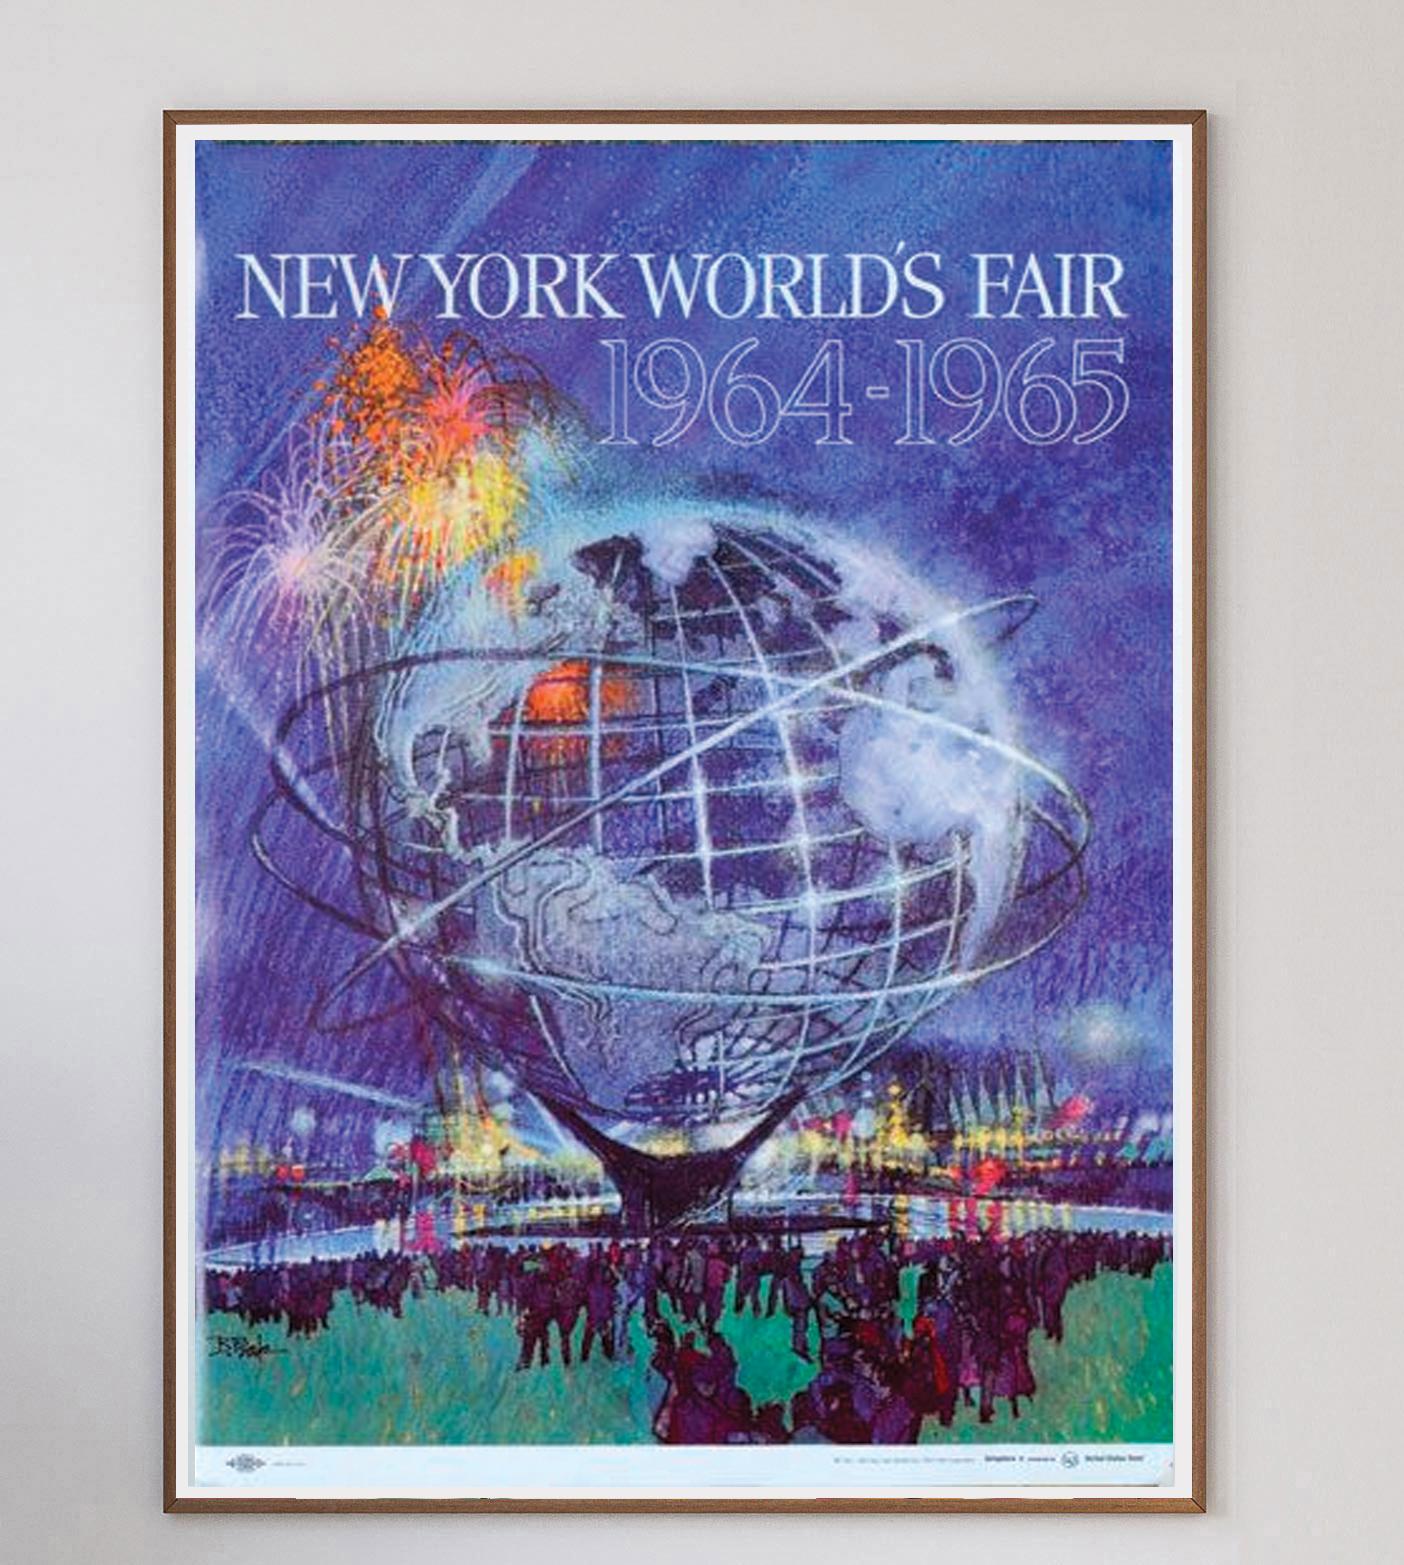 Considérée comme l'ultime vitrine des promesses du milieu du siècle, l'exposition universelle de New York de 1964/1965 a été une foire mondiale célébrant la technologie, la culture et l'entreprise. Avec pour toile de fond l'ère spatiale, la foire